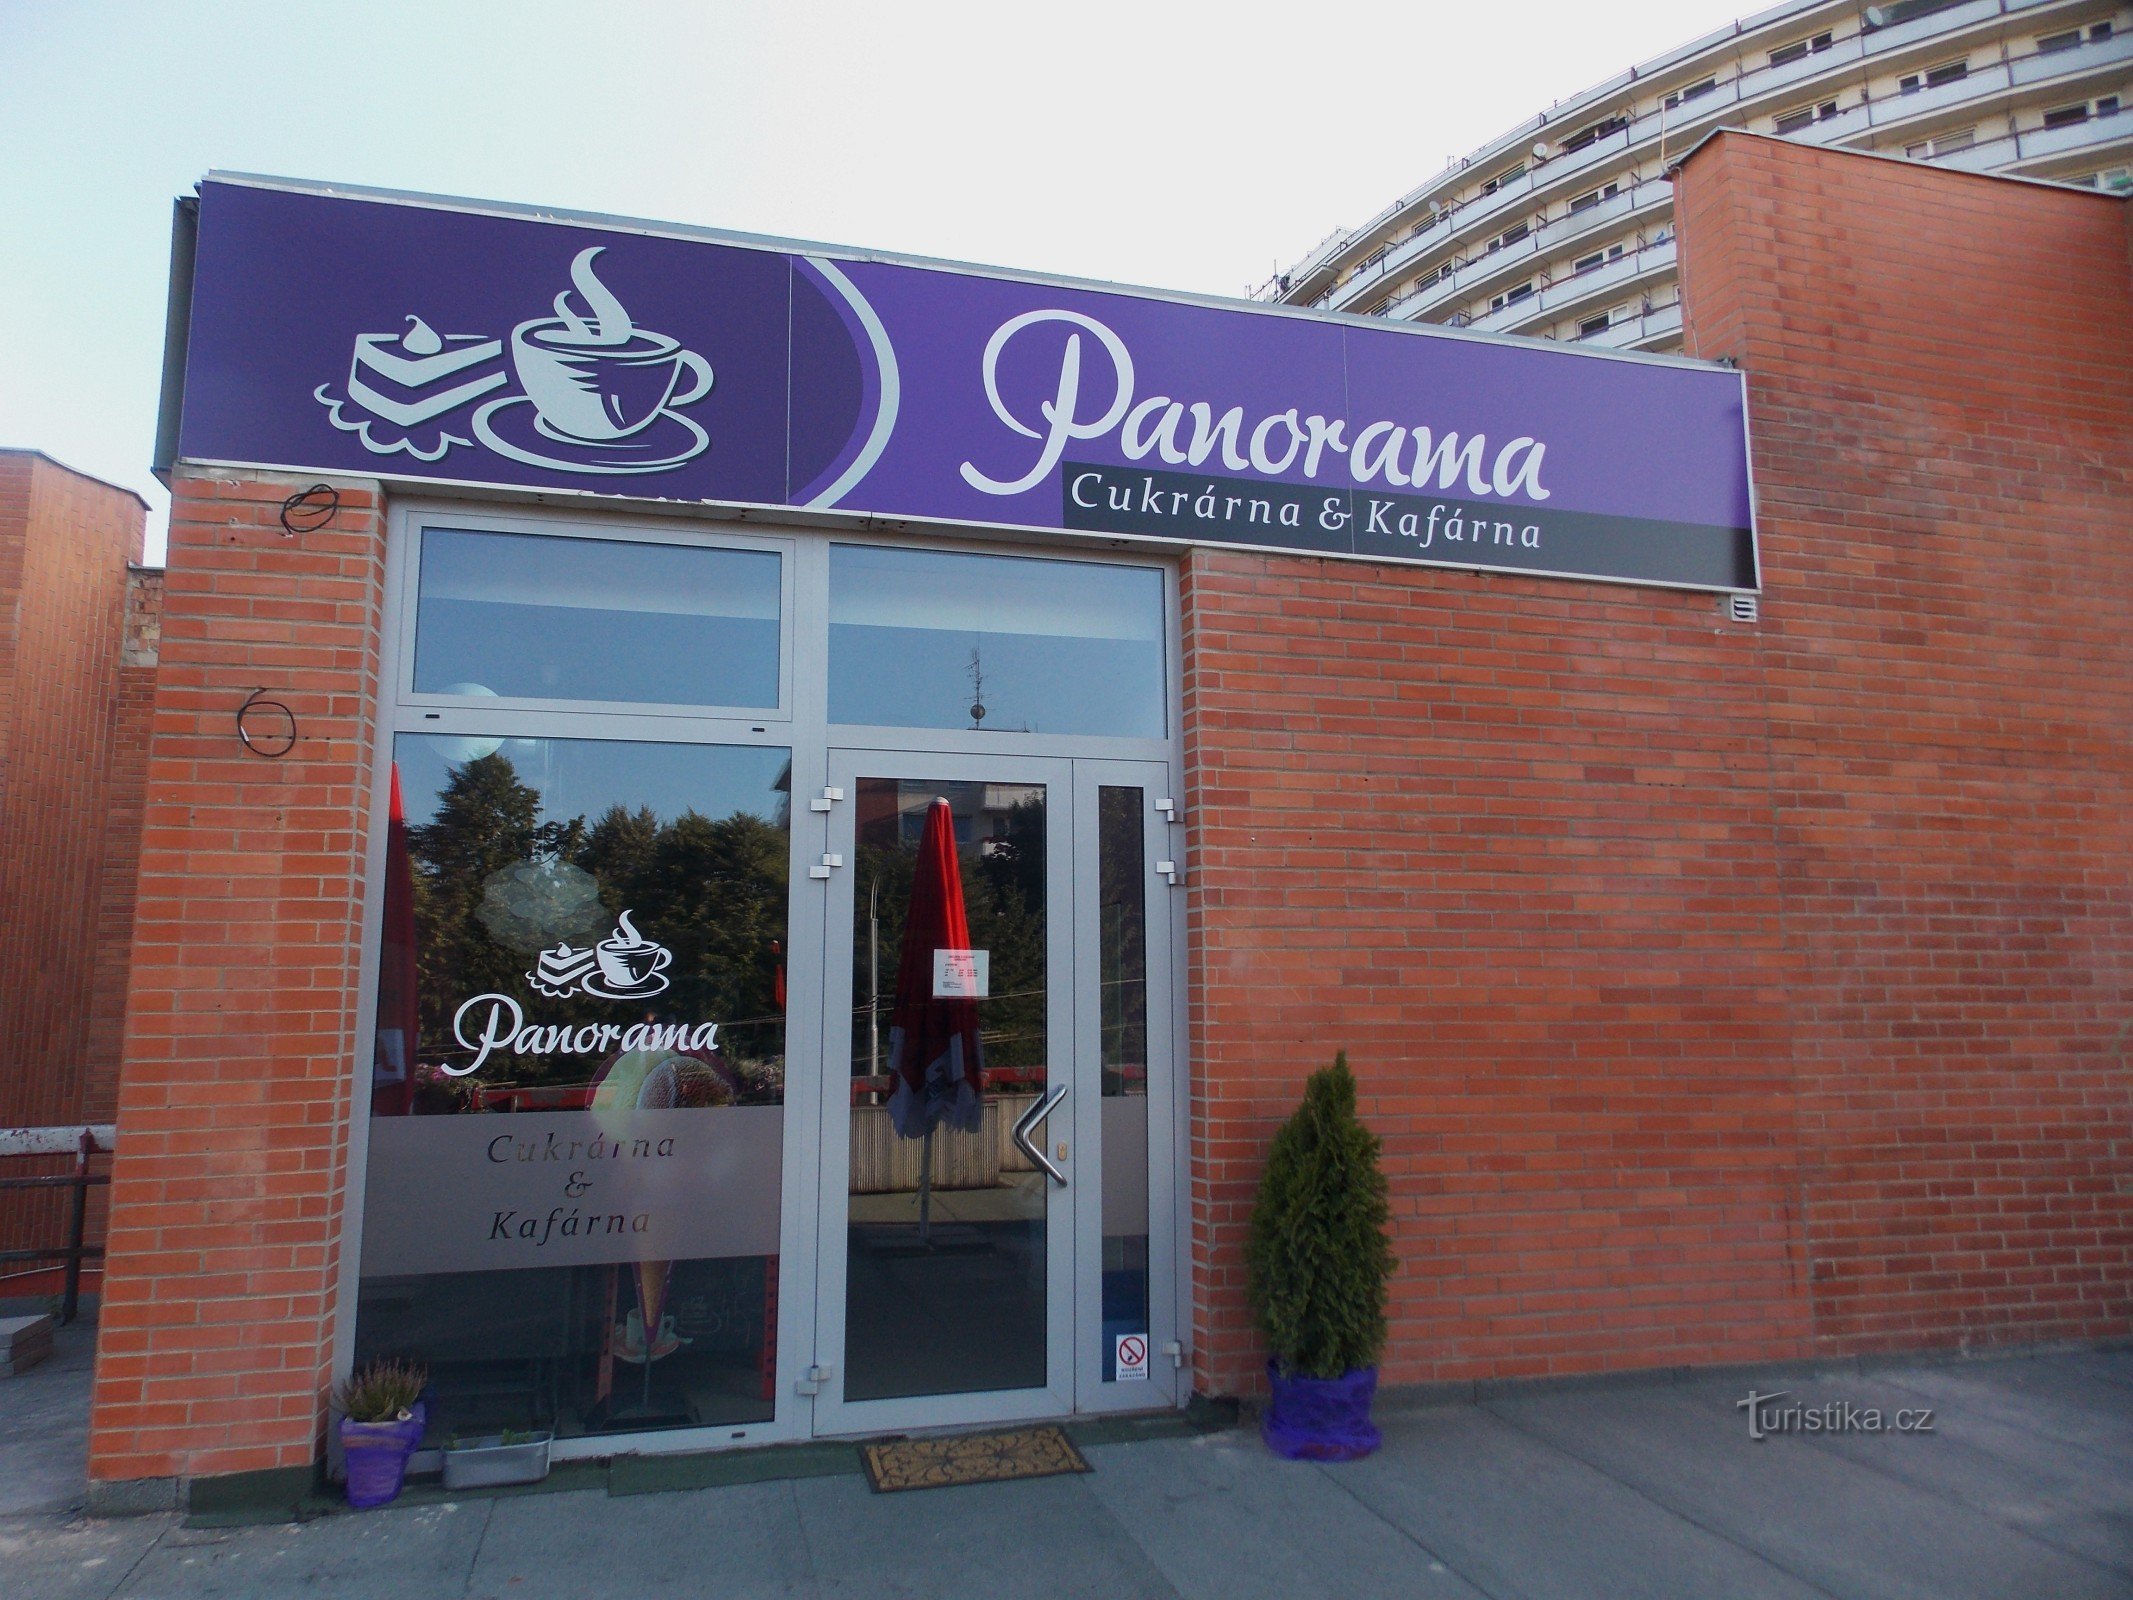 Konfektyr - Café Panorama i Zlín